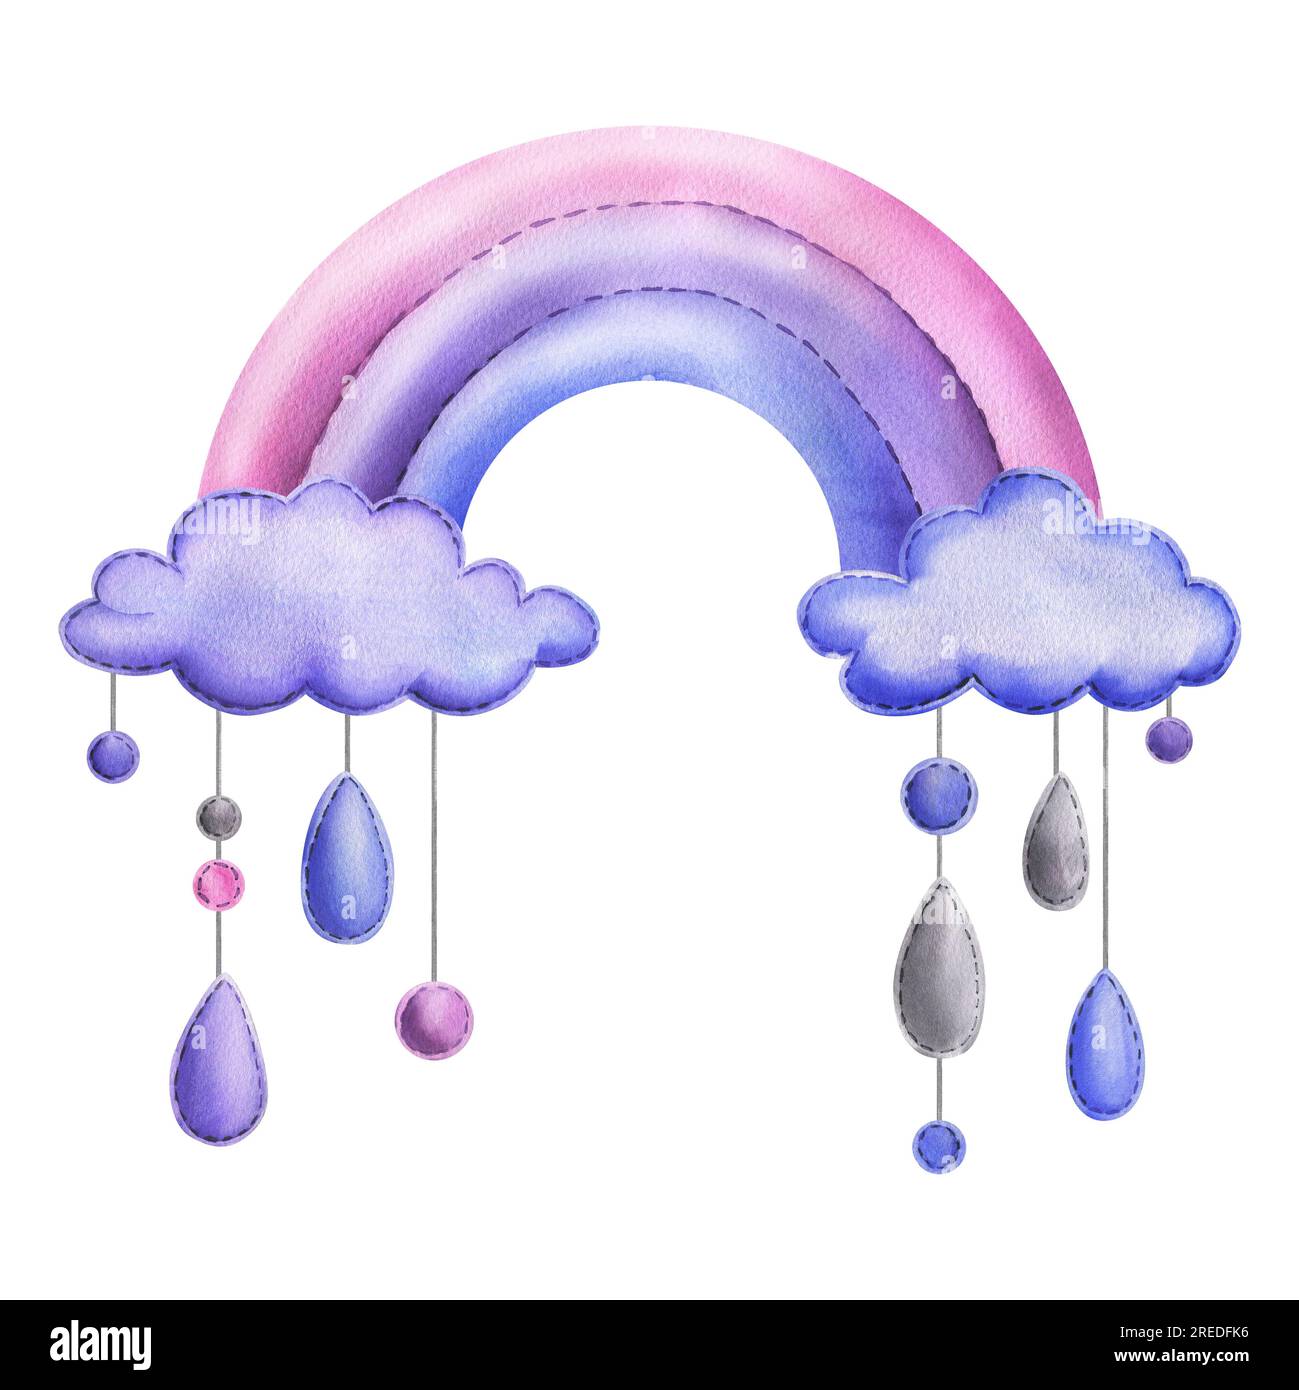 Ein genähter Regenbogen mit Wolken und Regentropfen, die an Seilen in Blau, Lila und Pink hängen. Kindische, niedliche Handzeichnung in Aquarellfarben. Isoliert Stockfoto